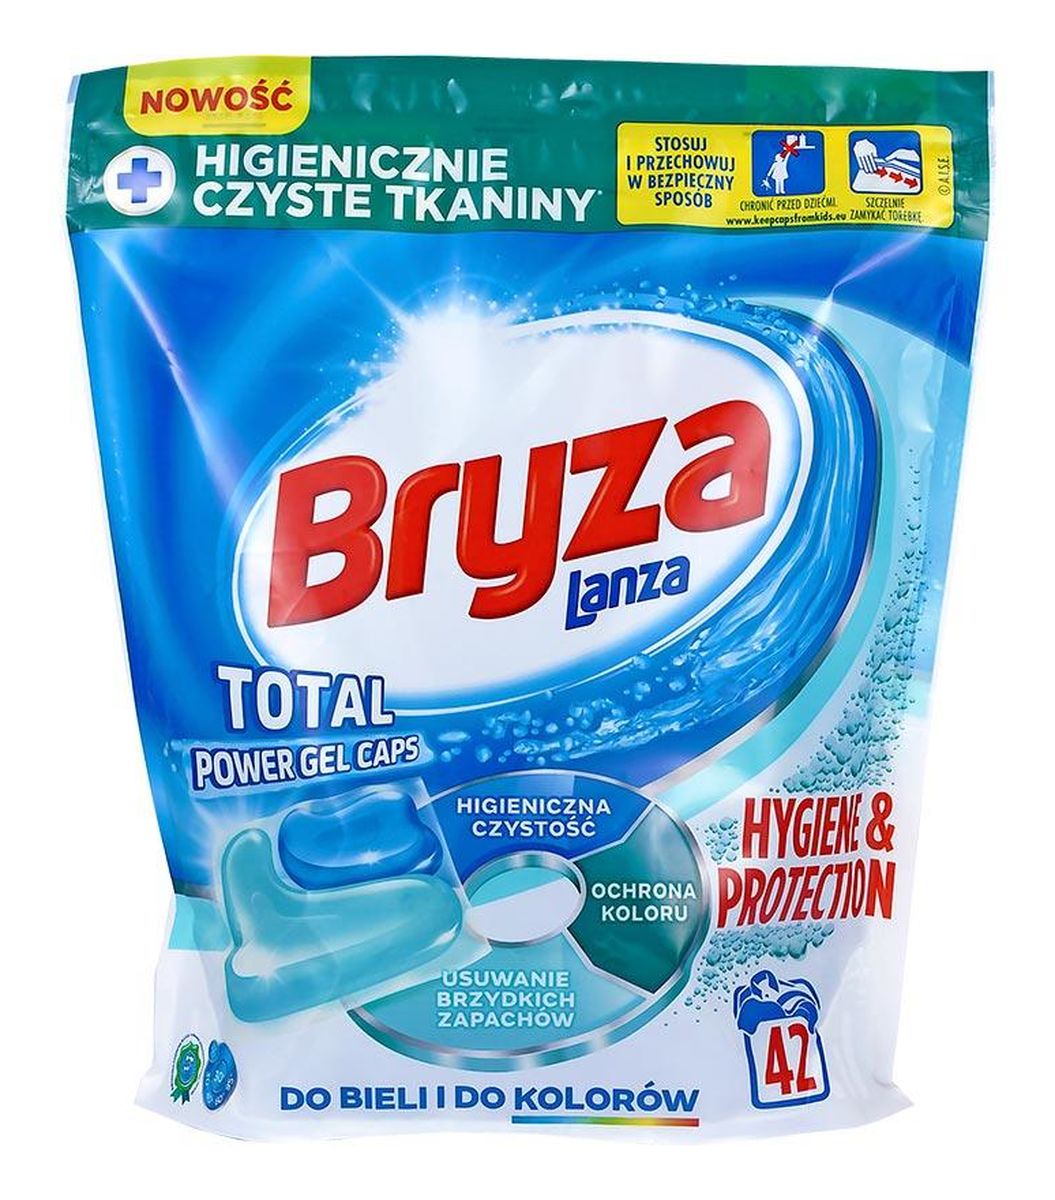 Hygiene&Protection kapsułki do prania do bieli i kolorów 28szt